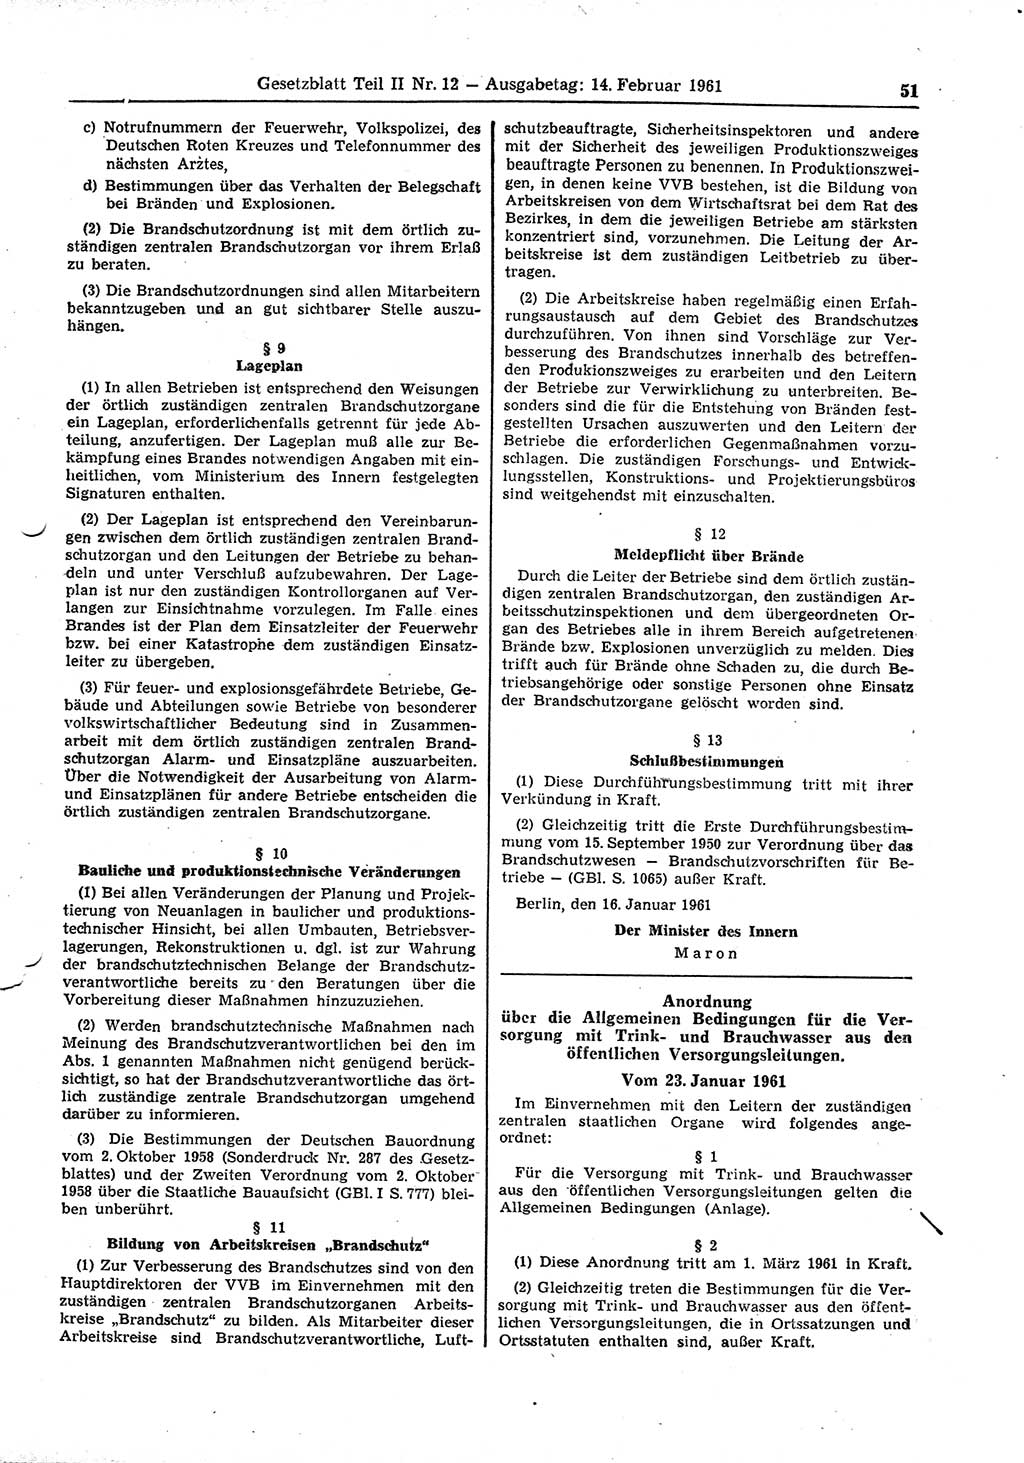 Gesetzblatt (GBl.) der Deutschen Demokratischen Republik (DDR) Teil ⅠⅠ 1961, Seite 51 (GBl. DDR ⅠⅠ 1961, S. 51)